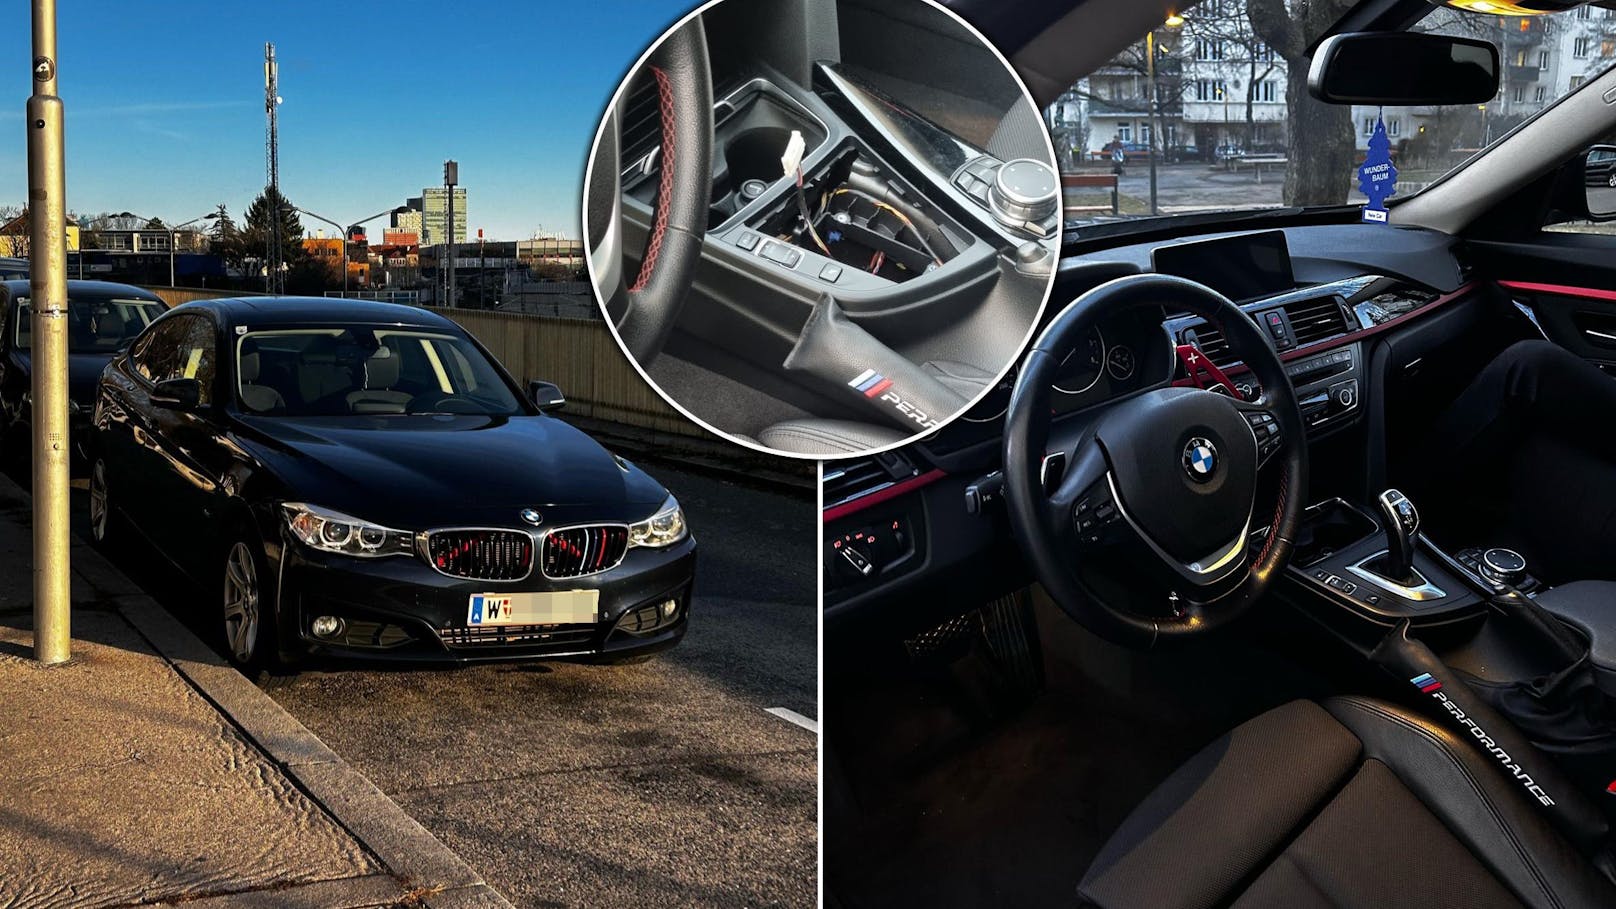 Serien-Täter schlagen erneut bei BMW-Lenker in Wien zu